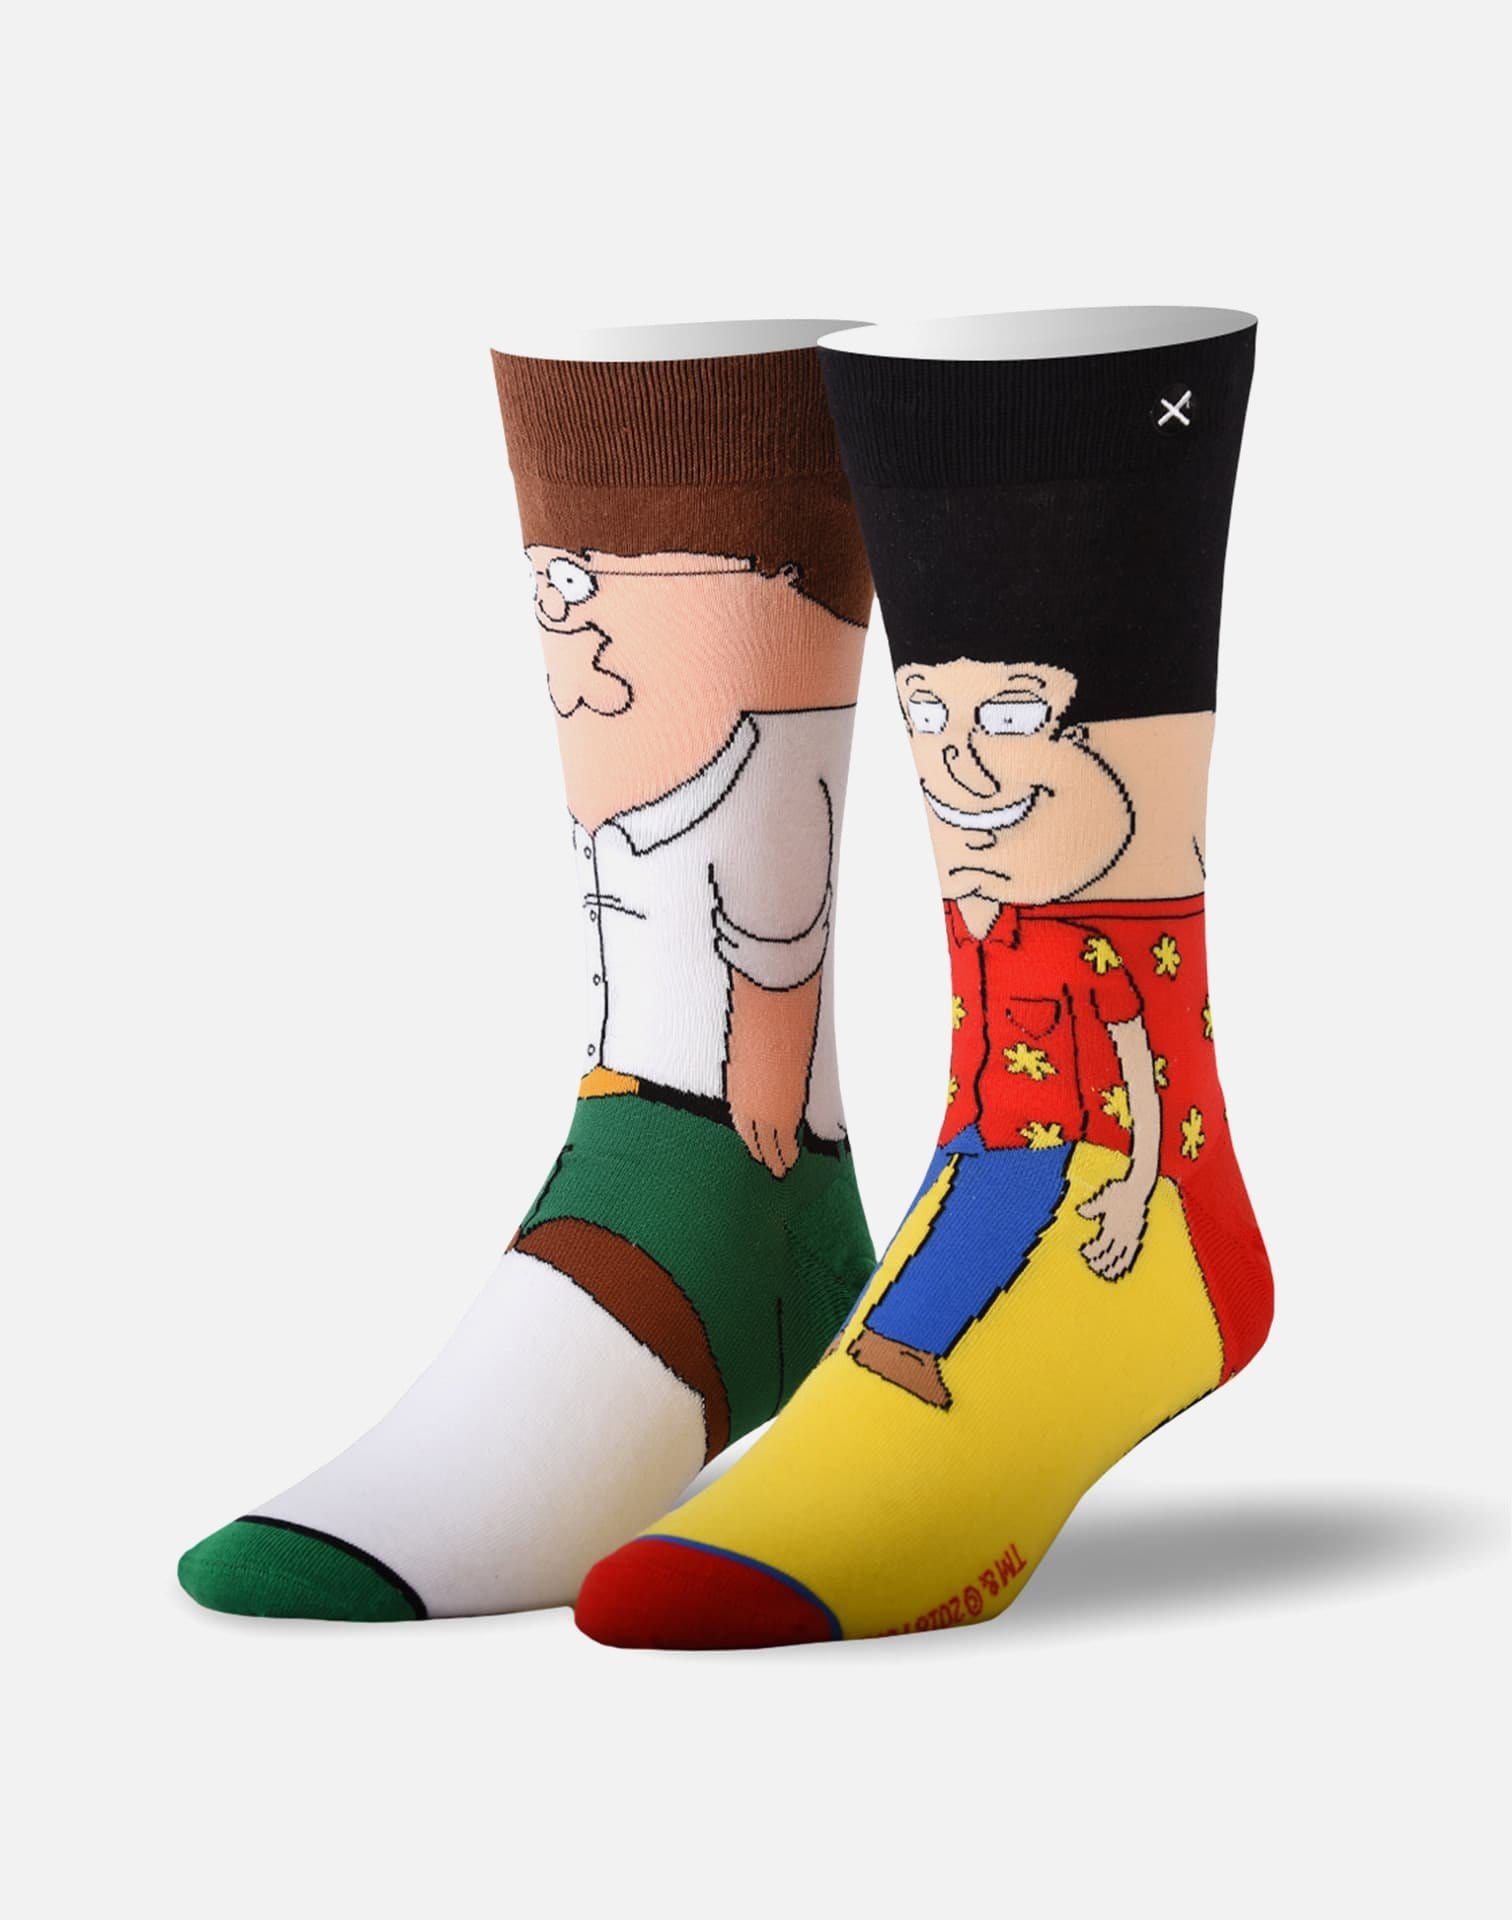 Odd Sox Peter & Quagmire Crew Socks